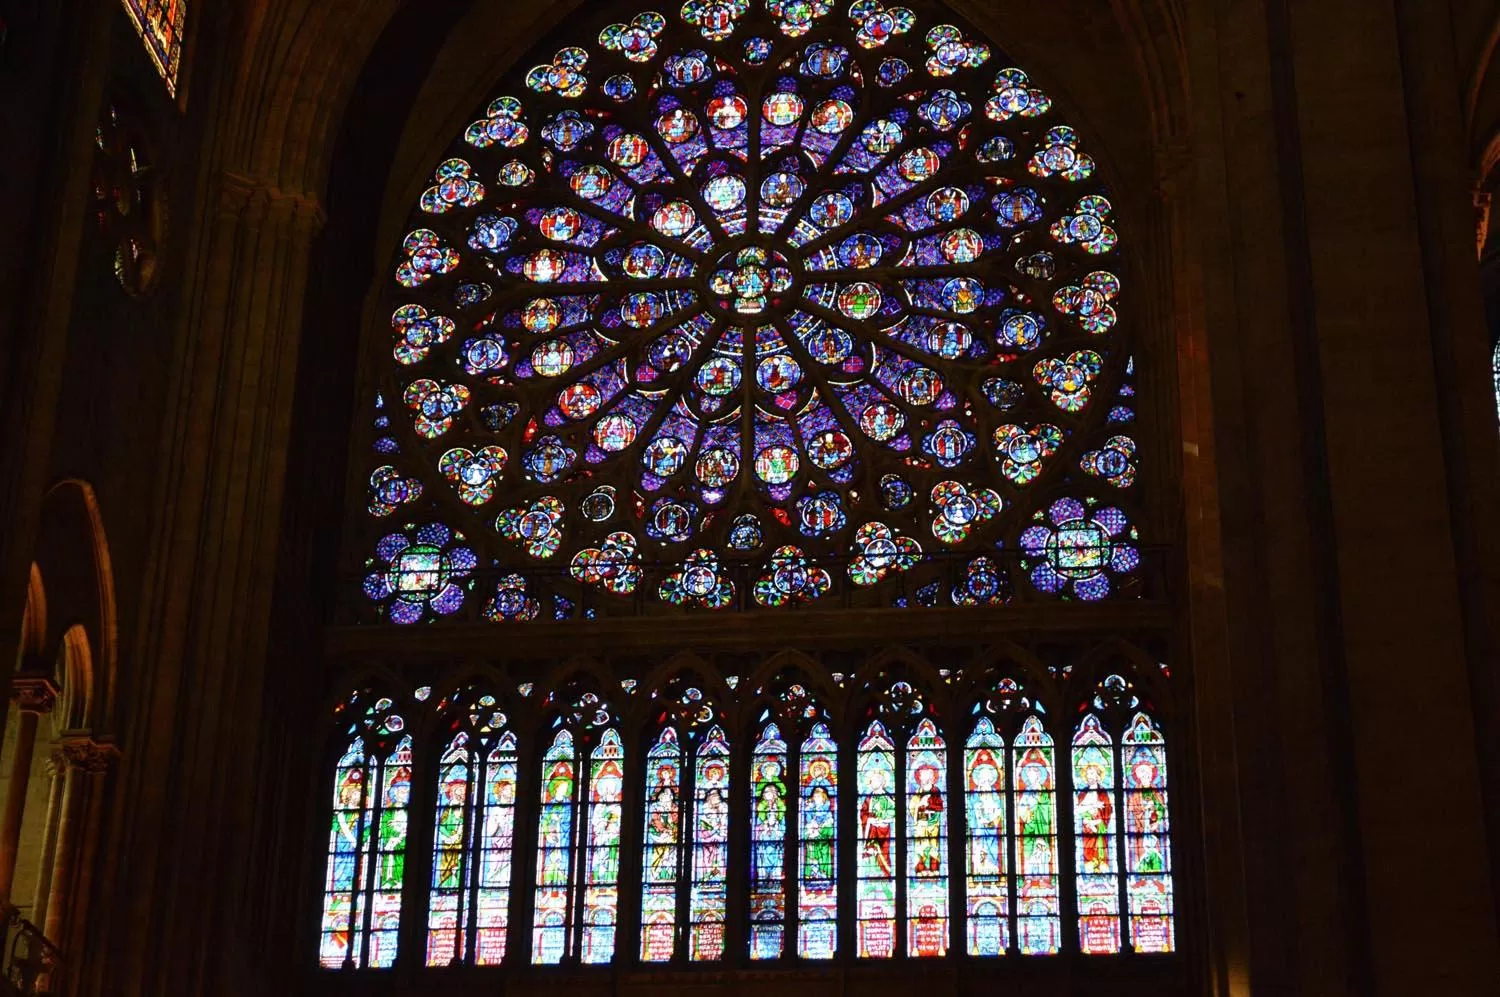 Galería: así era la catedral de Notre Dame por dentro